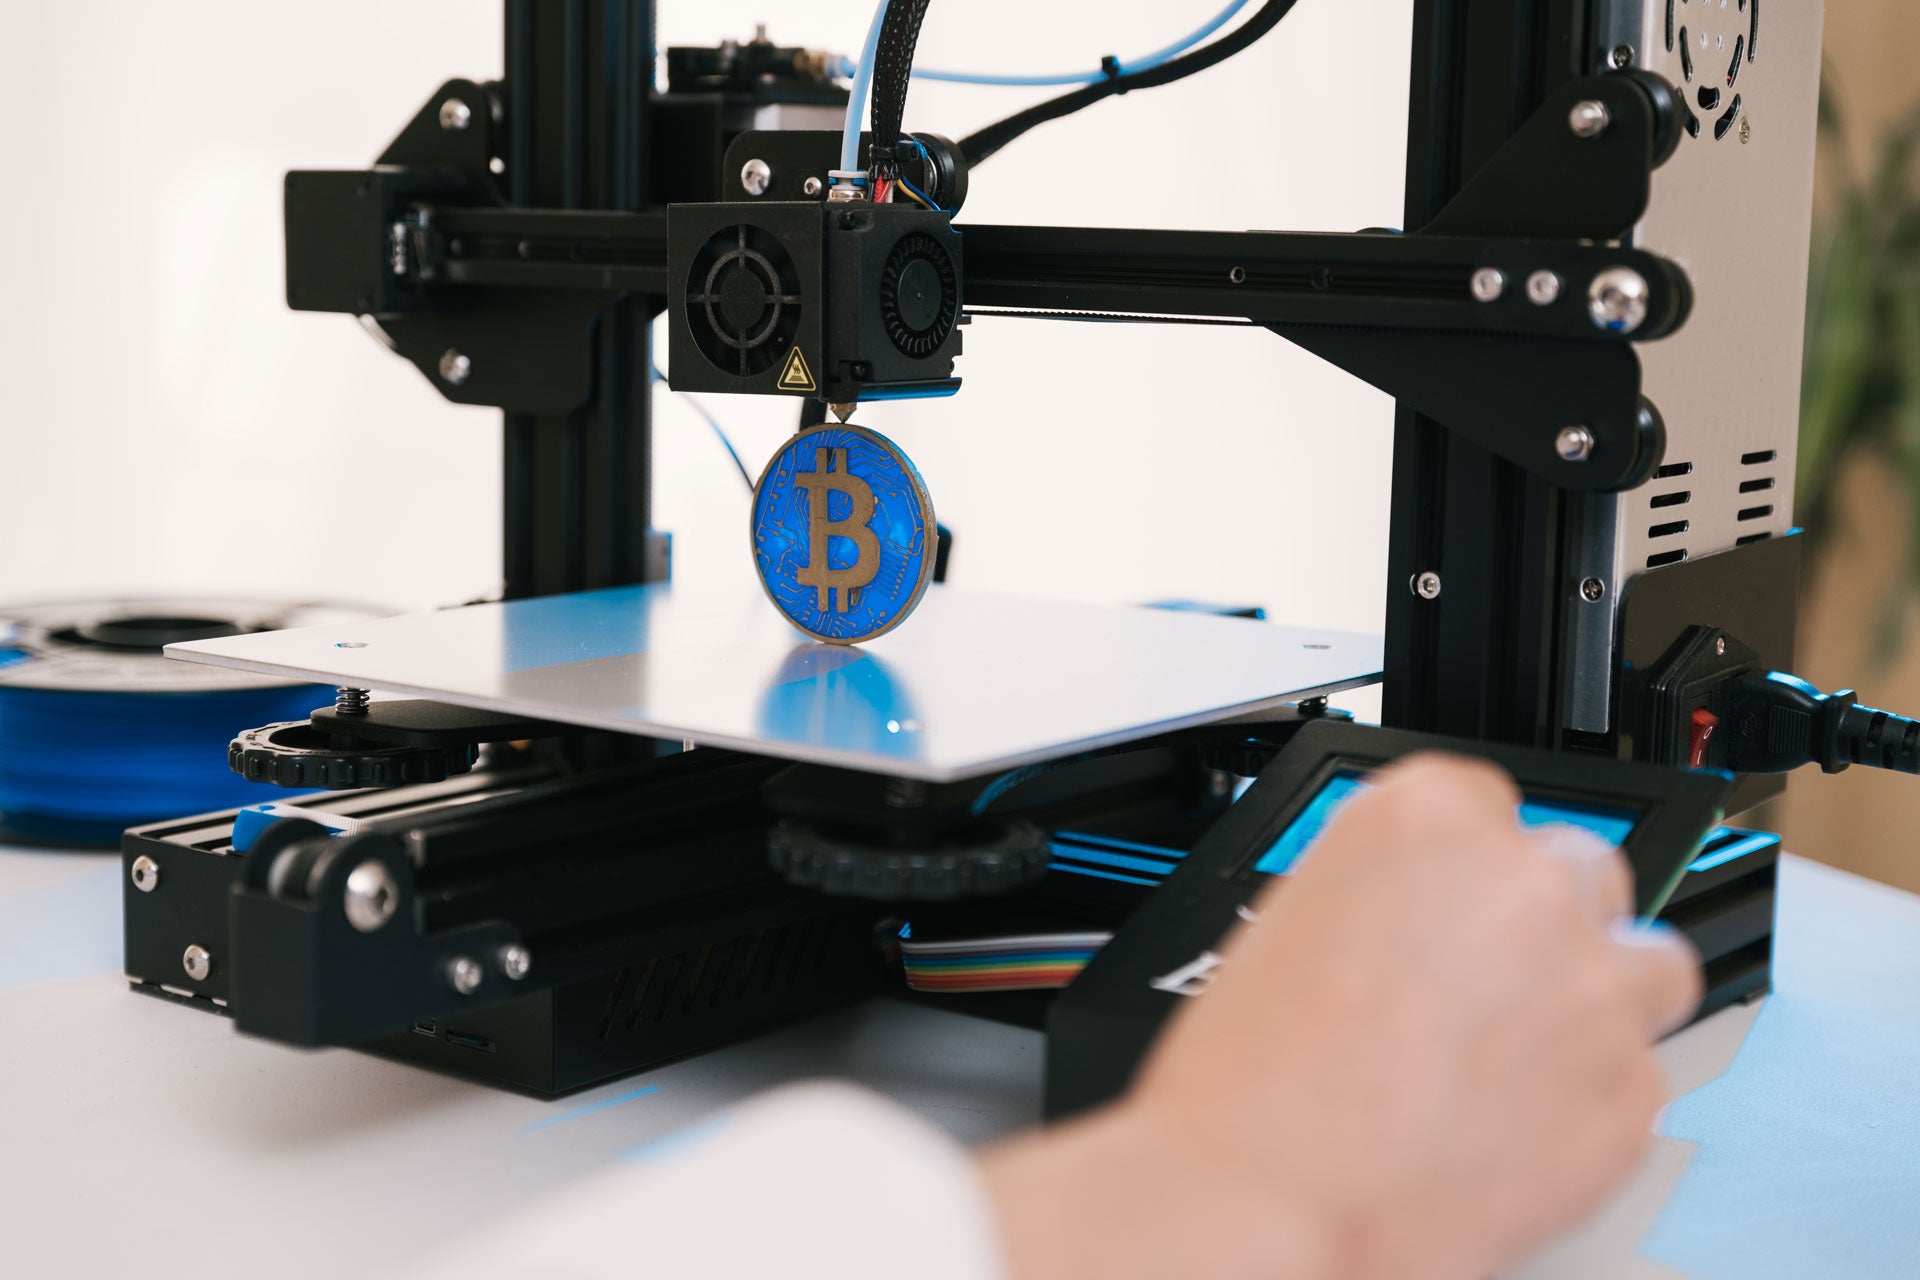 ¡Obtenga ingresos adicionales con una impresora 3D! 4 sugerencias para ganar dinero